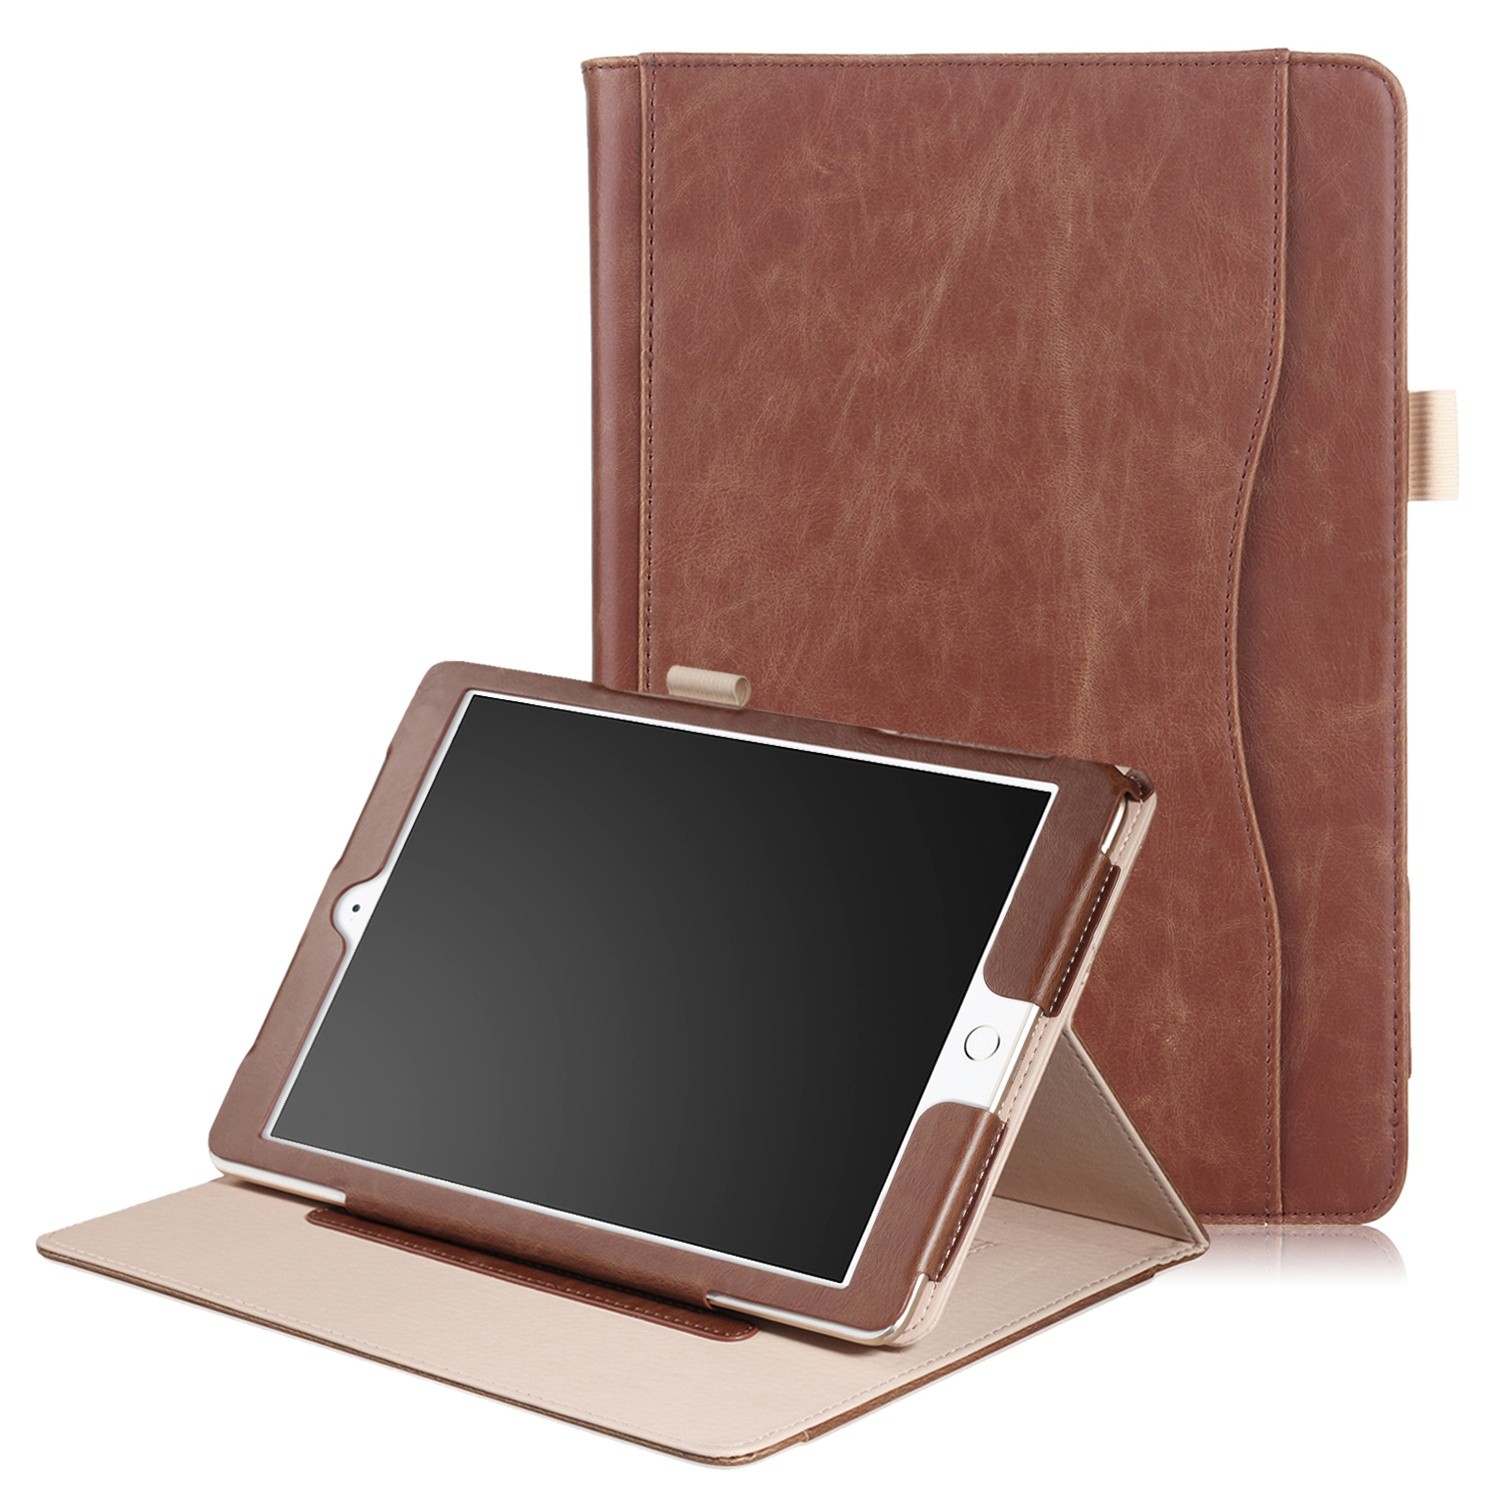 kaas Kent Veel iPad mini 4 / iPad mini 5 leren case / hoes bruin incl. standaard met 3  standen